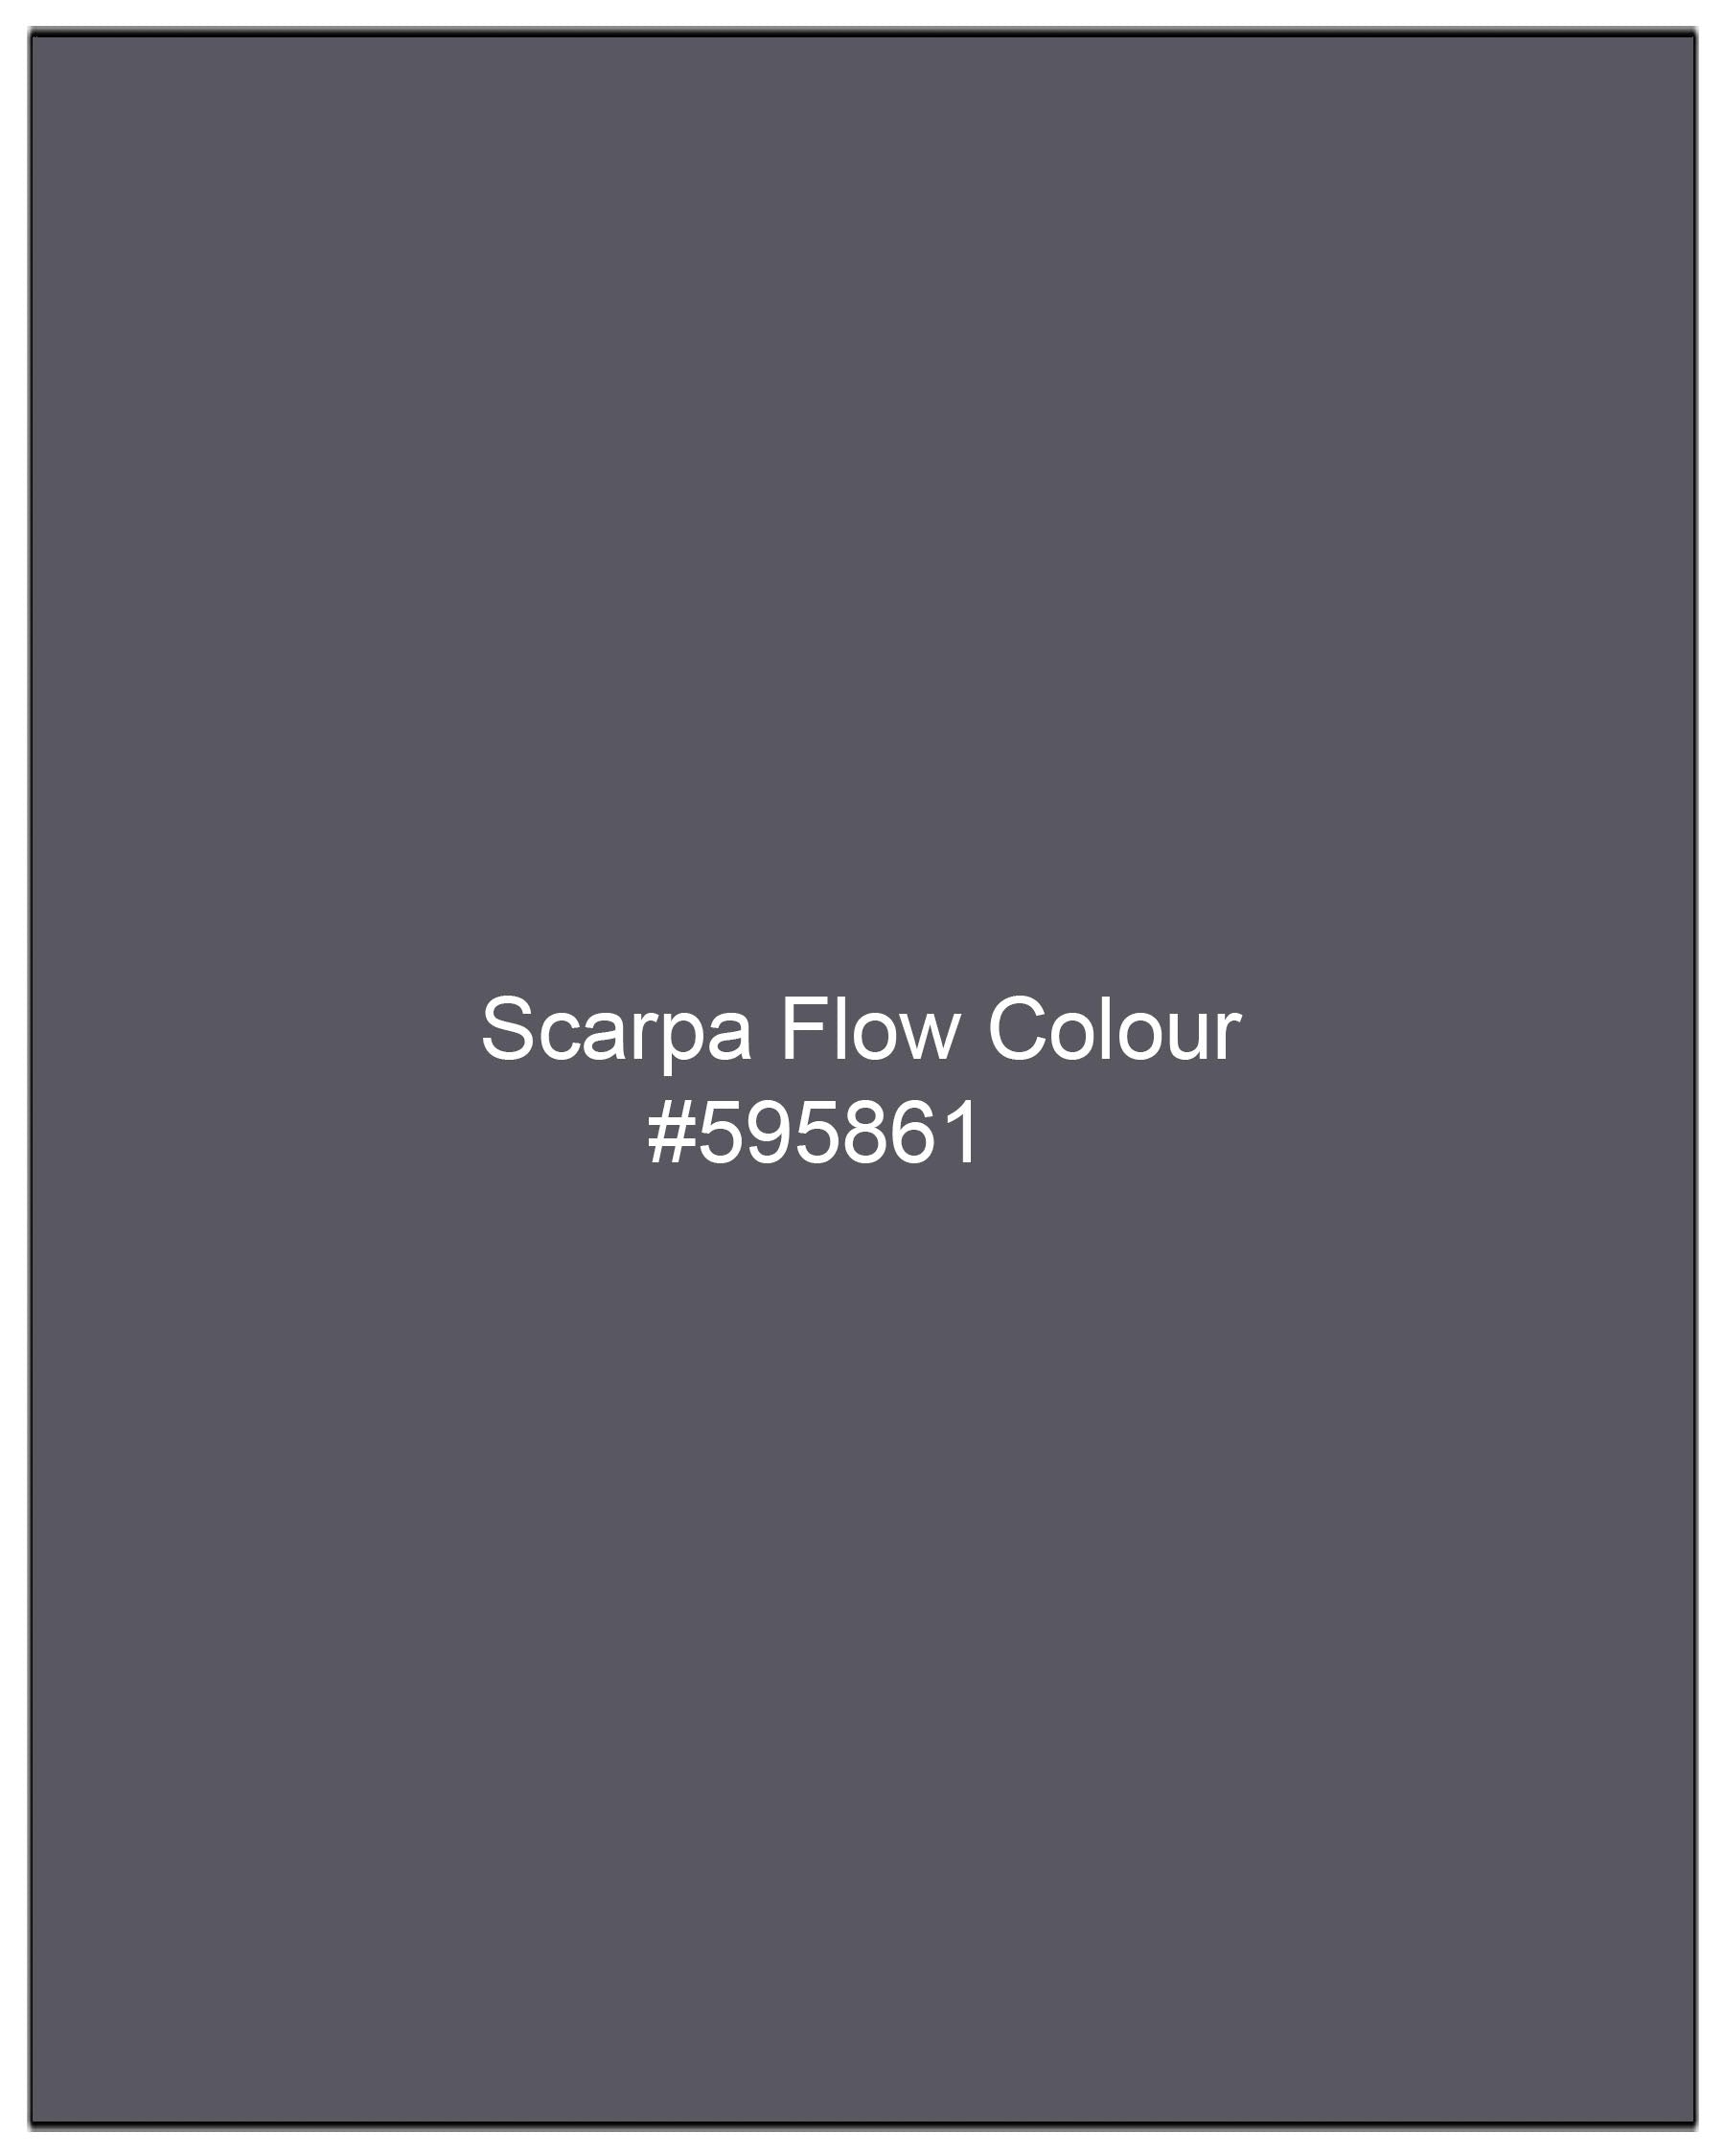 Scarpa Flow Gray Textured Pant T1979-28, T1979-30, T1979-32, T1979-34, T1979-36, T1979-38, T1979-40, T1979-42, T1979-44